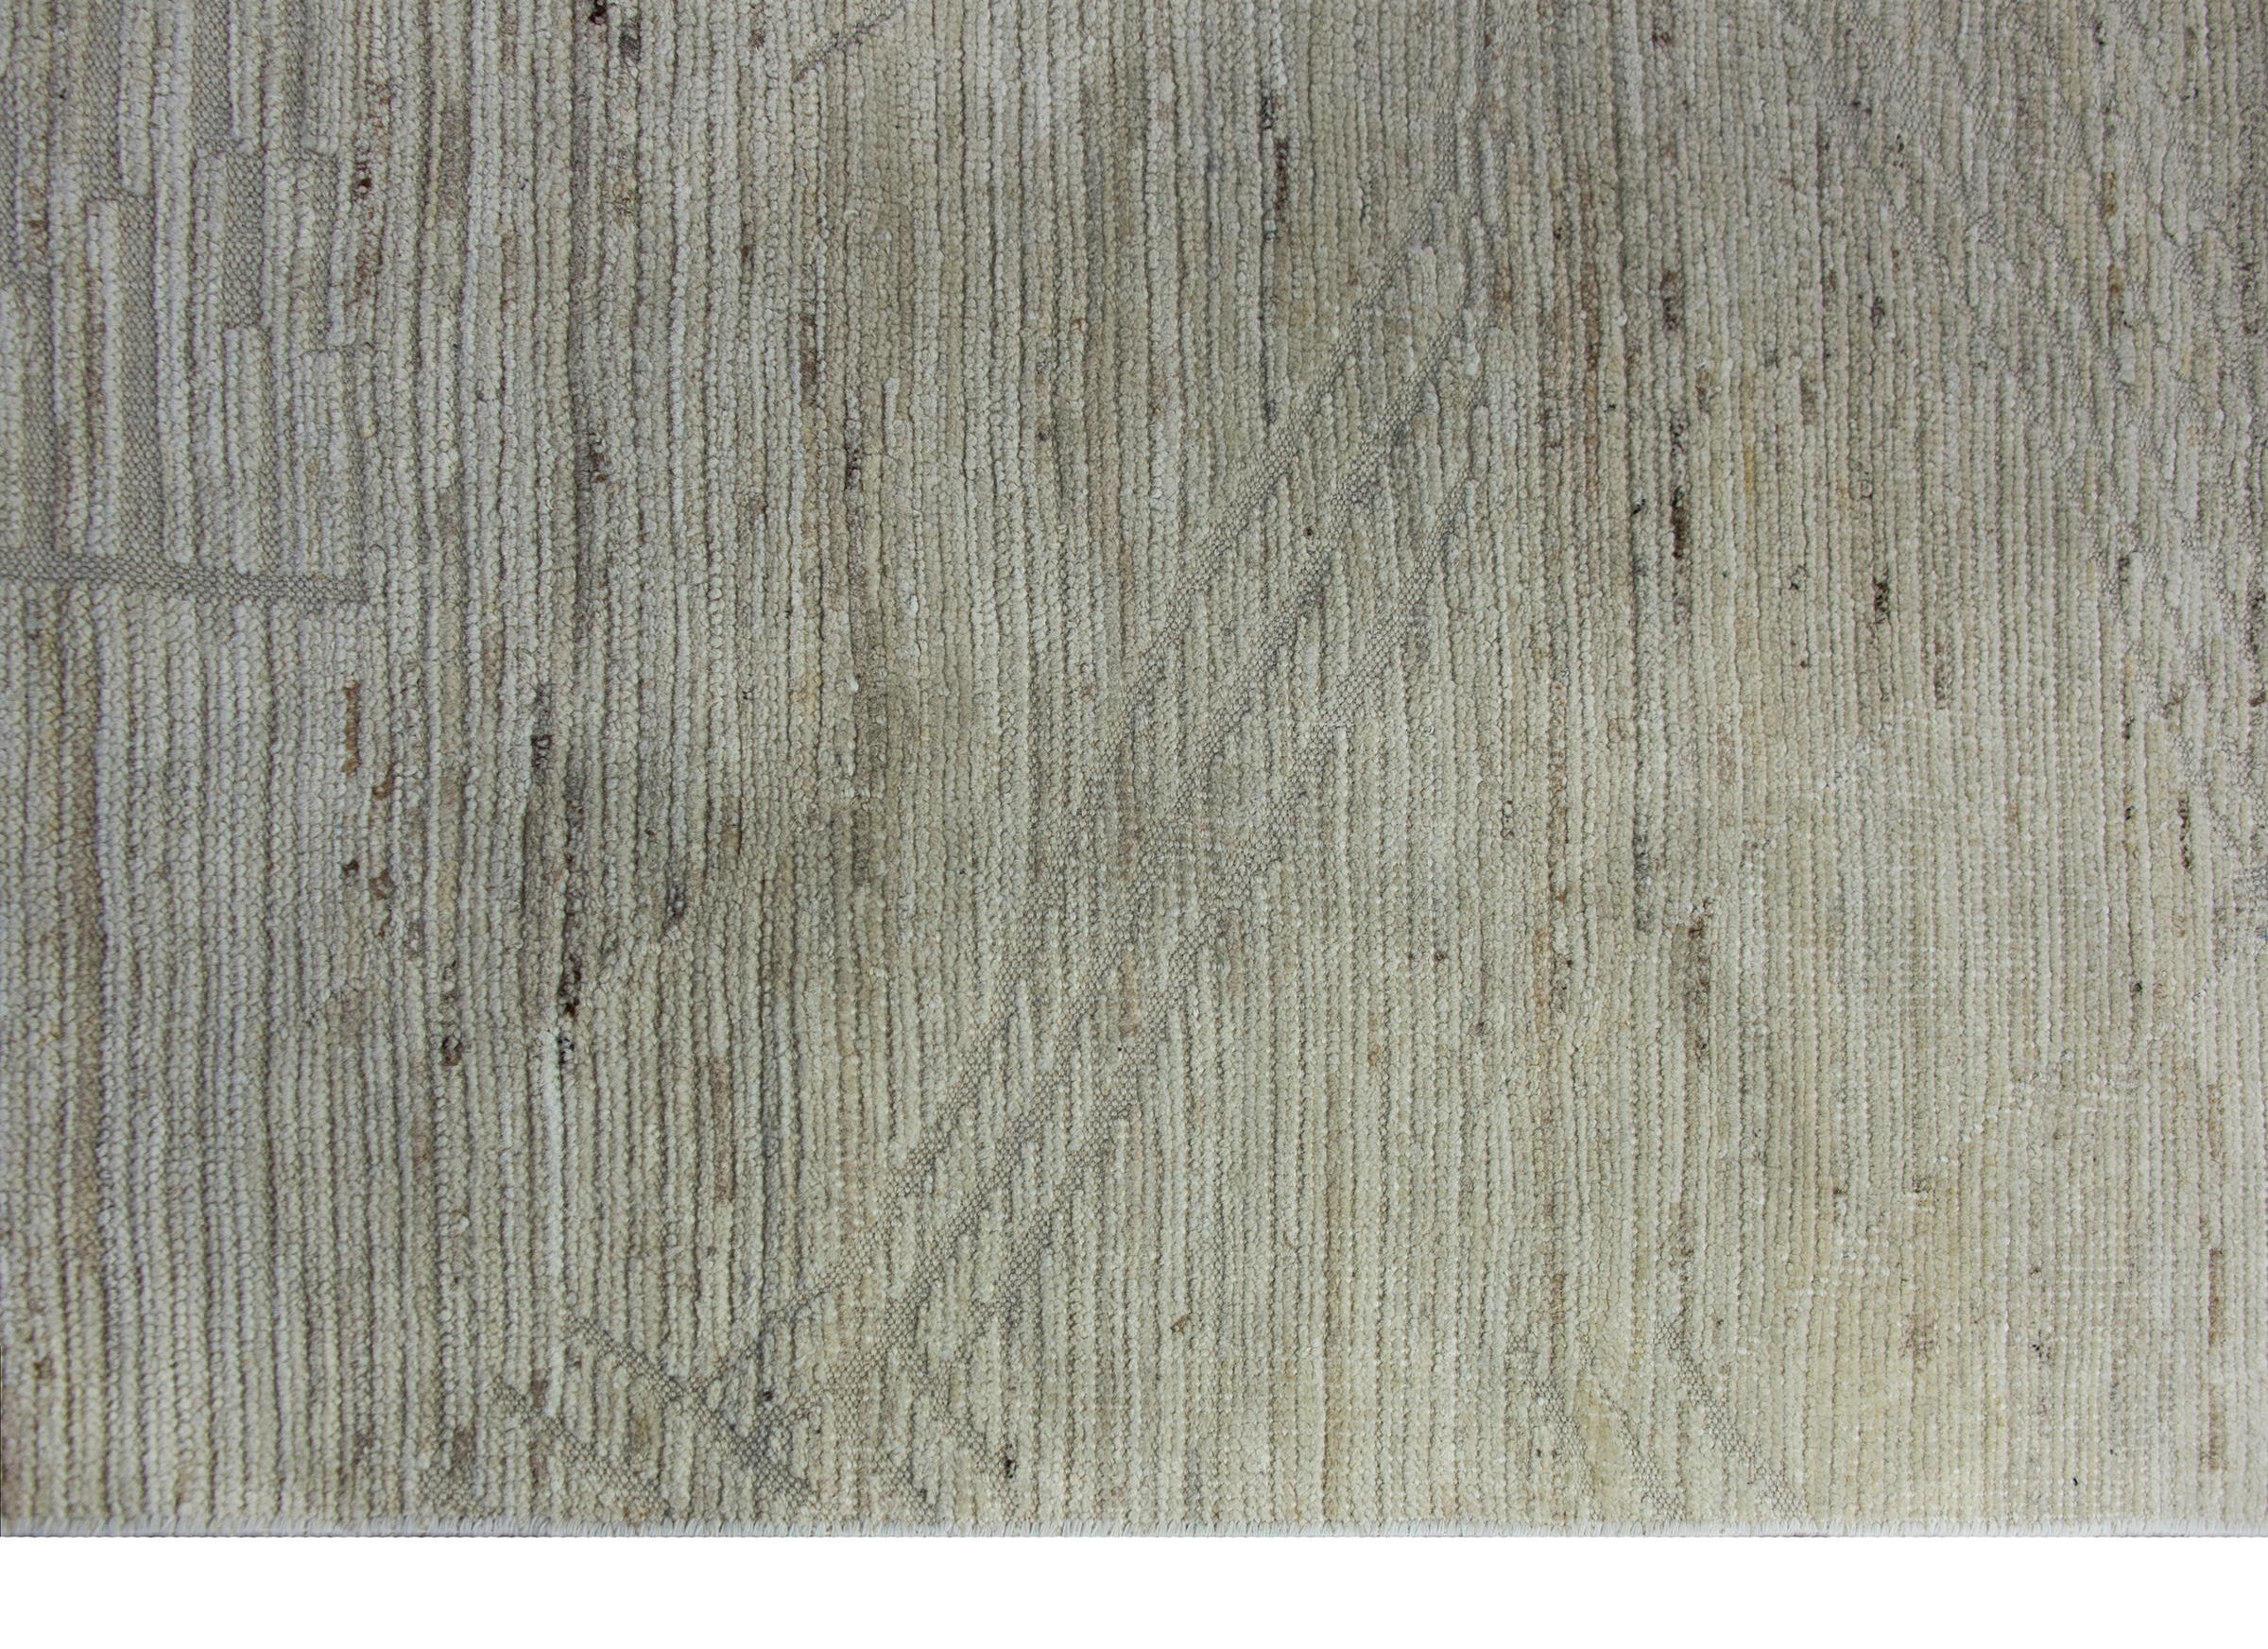 Ein schicker indischer handgeknüpfter Teppich aus dem späten 20. Jahrhundert, gewebt in verschiedenen Schattierungen von naturfarbener Wolle und mit einem modernen Streifenmuster, das in Flachgewebe gegen den Flor des Feldes gewebt ist.  